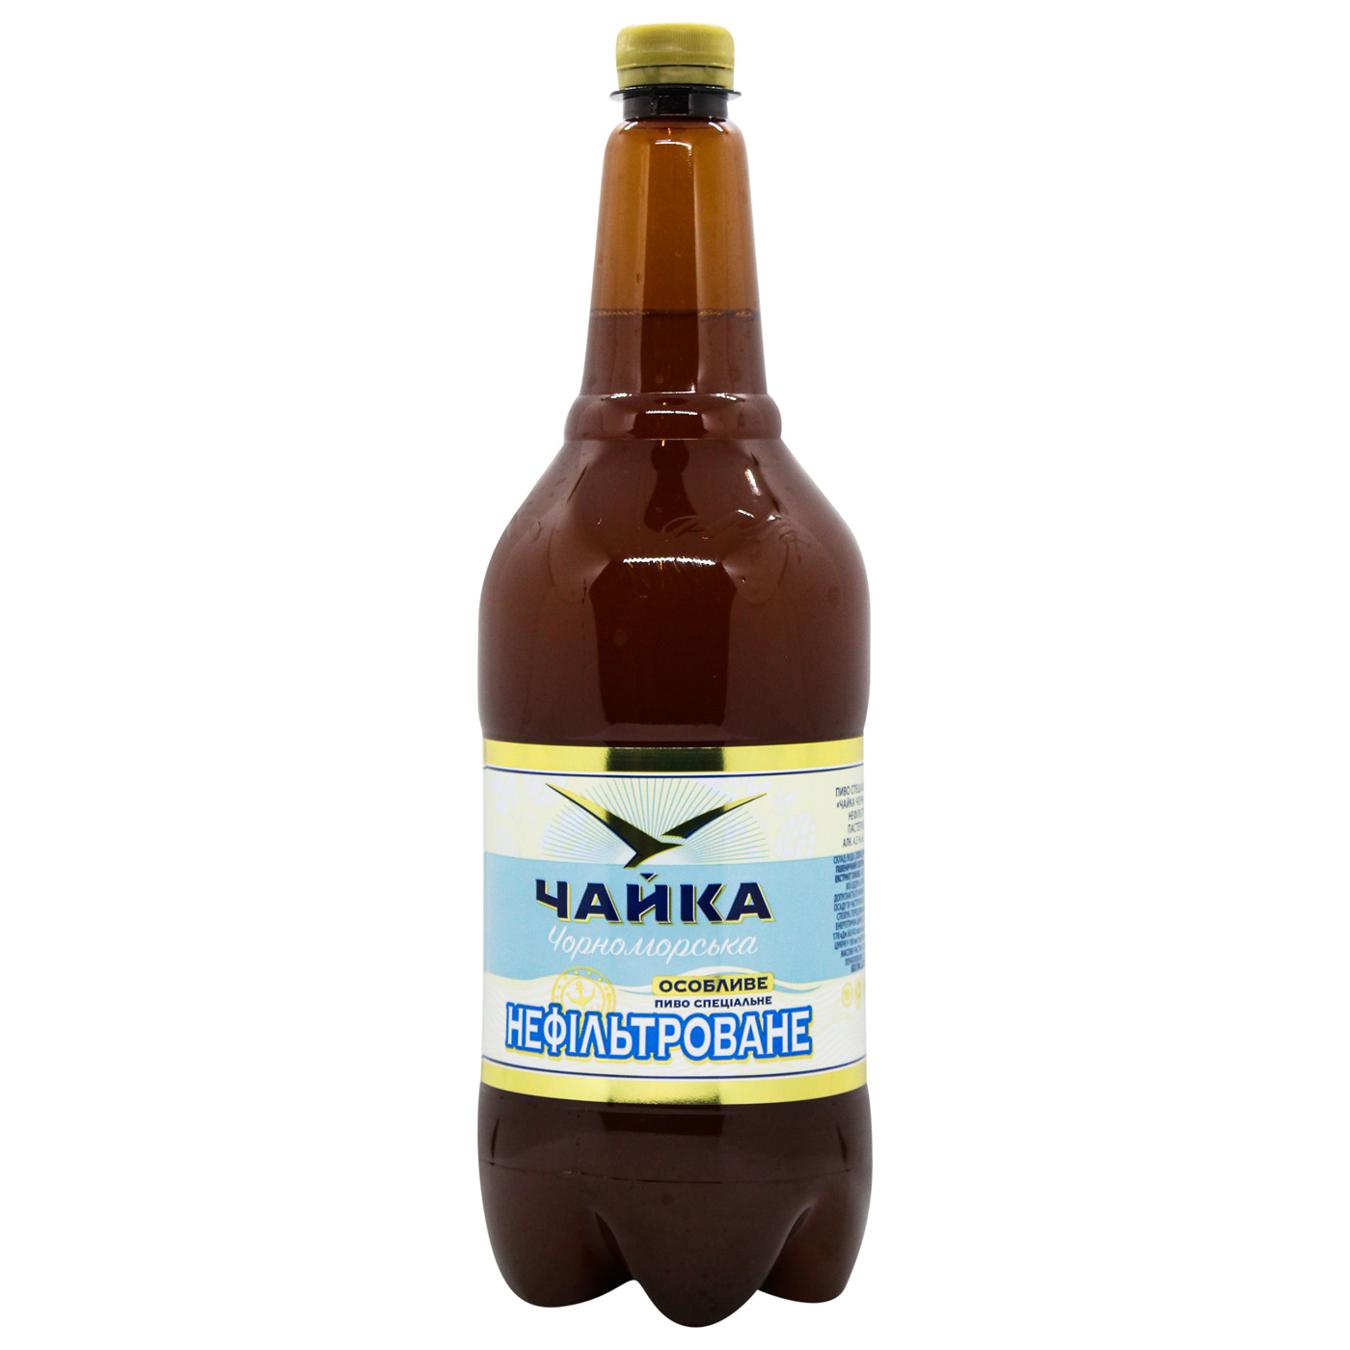 Пиво светлое нефильтрованное Чайка Черноморская 4,8% 1,45л пластиковая бутылка